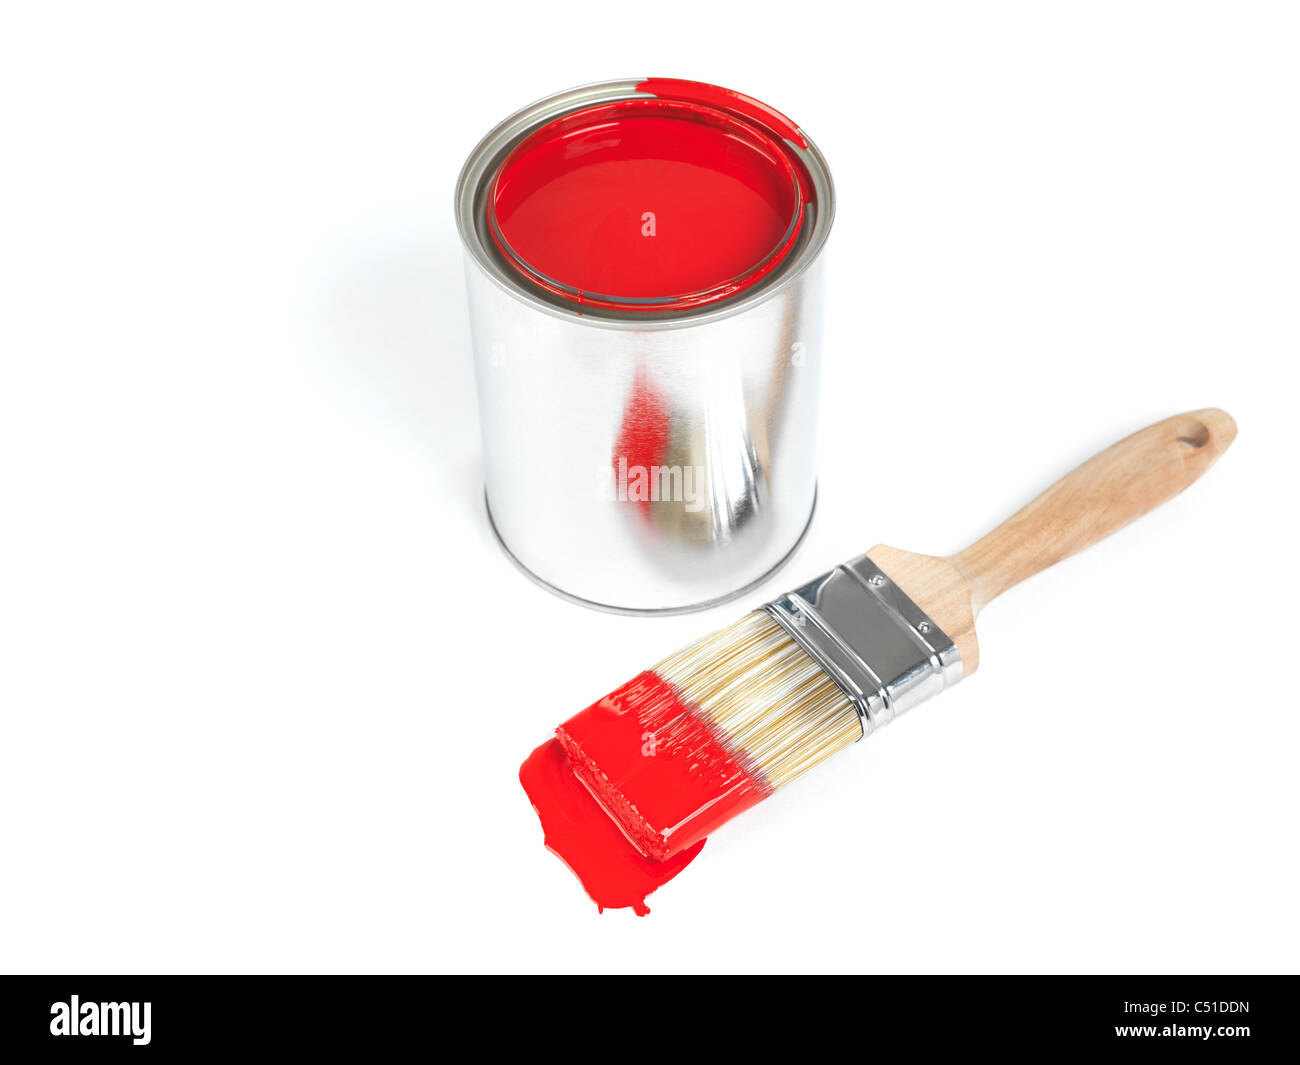 Spazzola di pittura e un barattolo di vernice rossa isolato su sfondo bianco Foto Stock